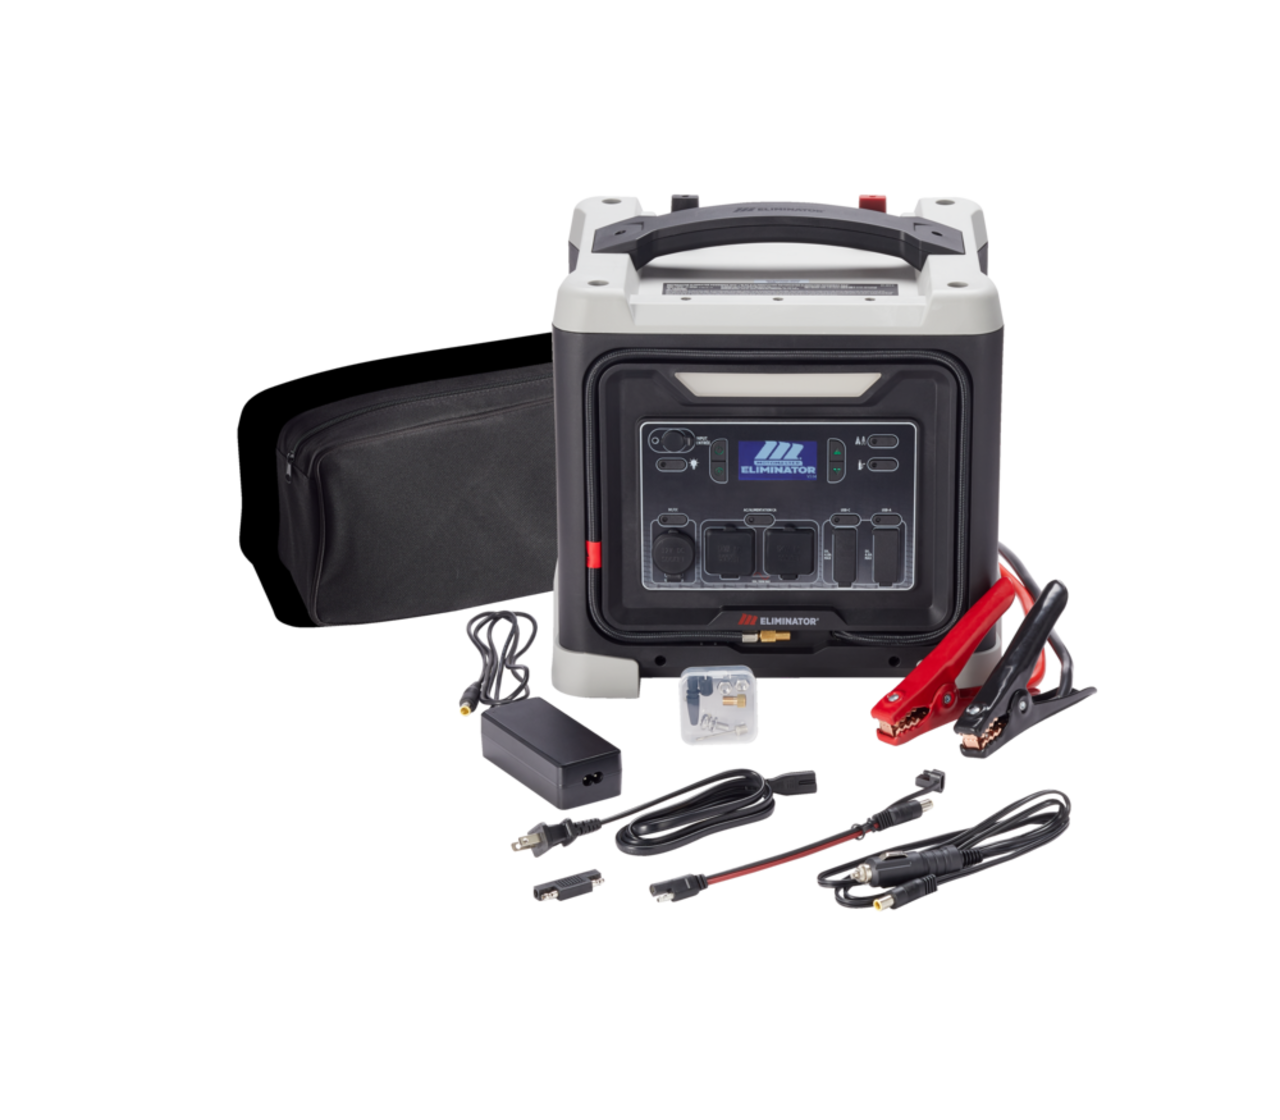 Bloc d'alimentation/démarreur portatif MotoMaster Eliminator PowerBoxMD,  puissance de crête de 600 A, 120 W